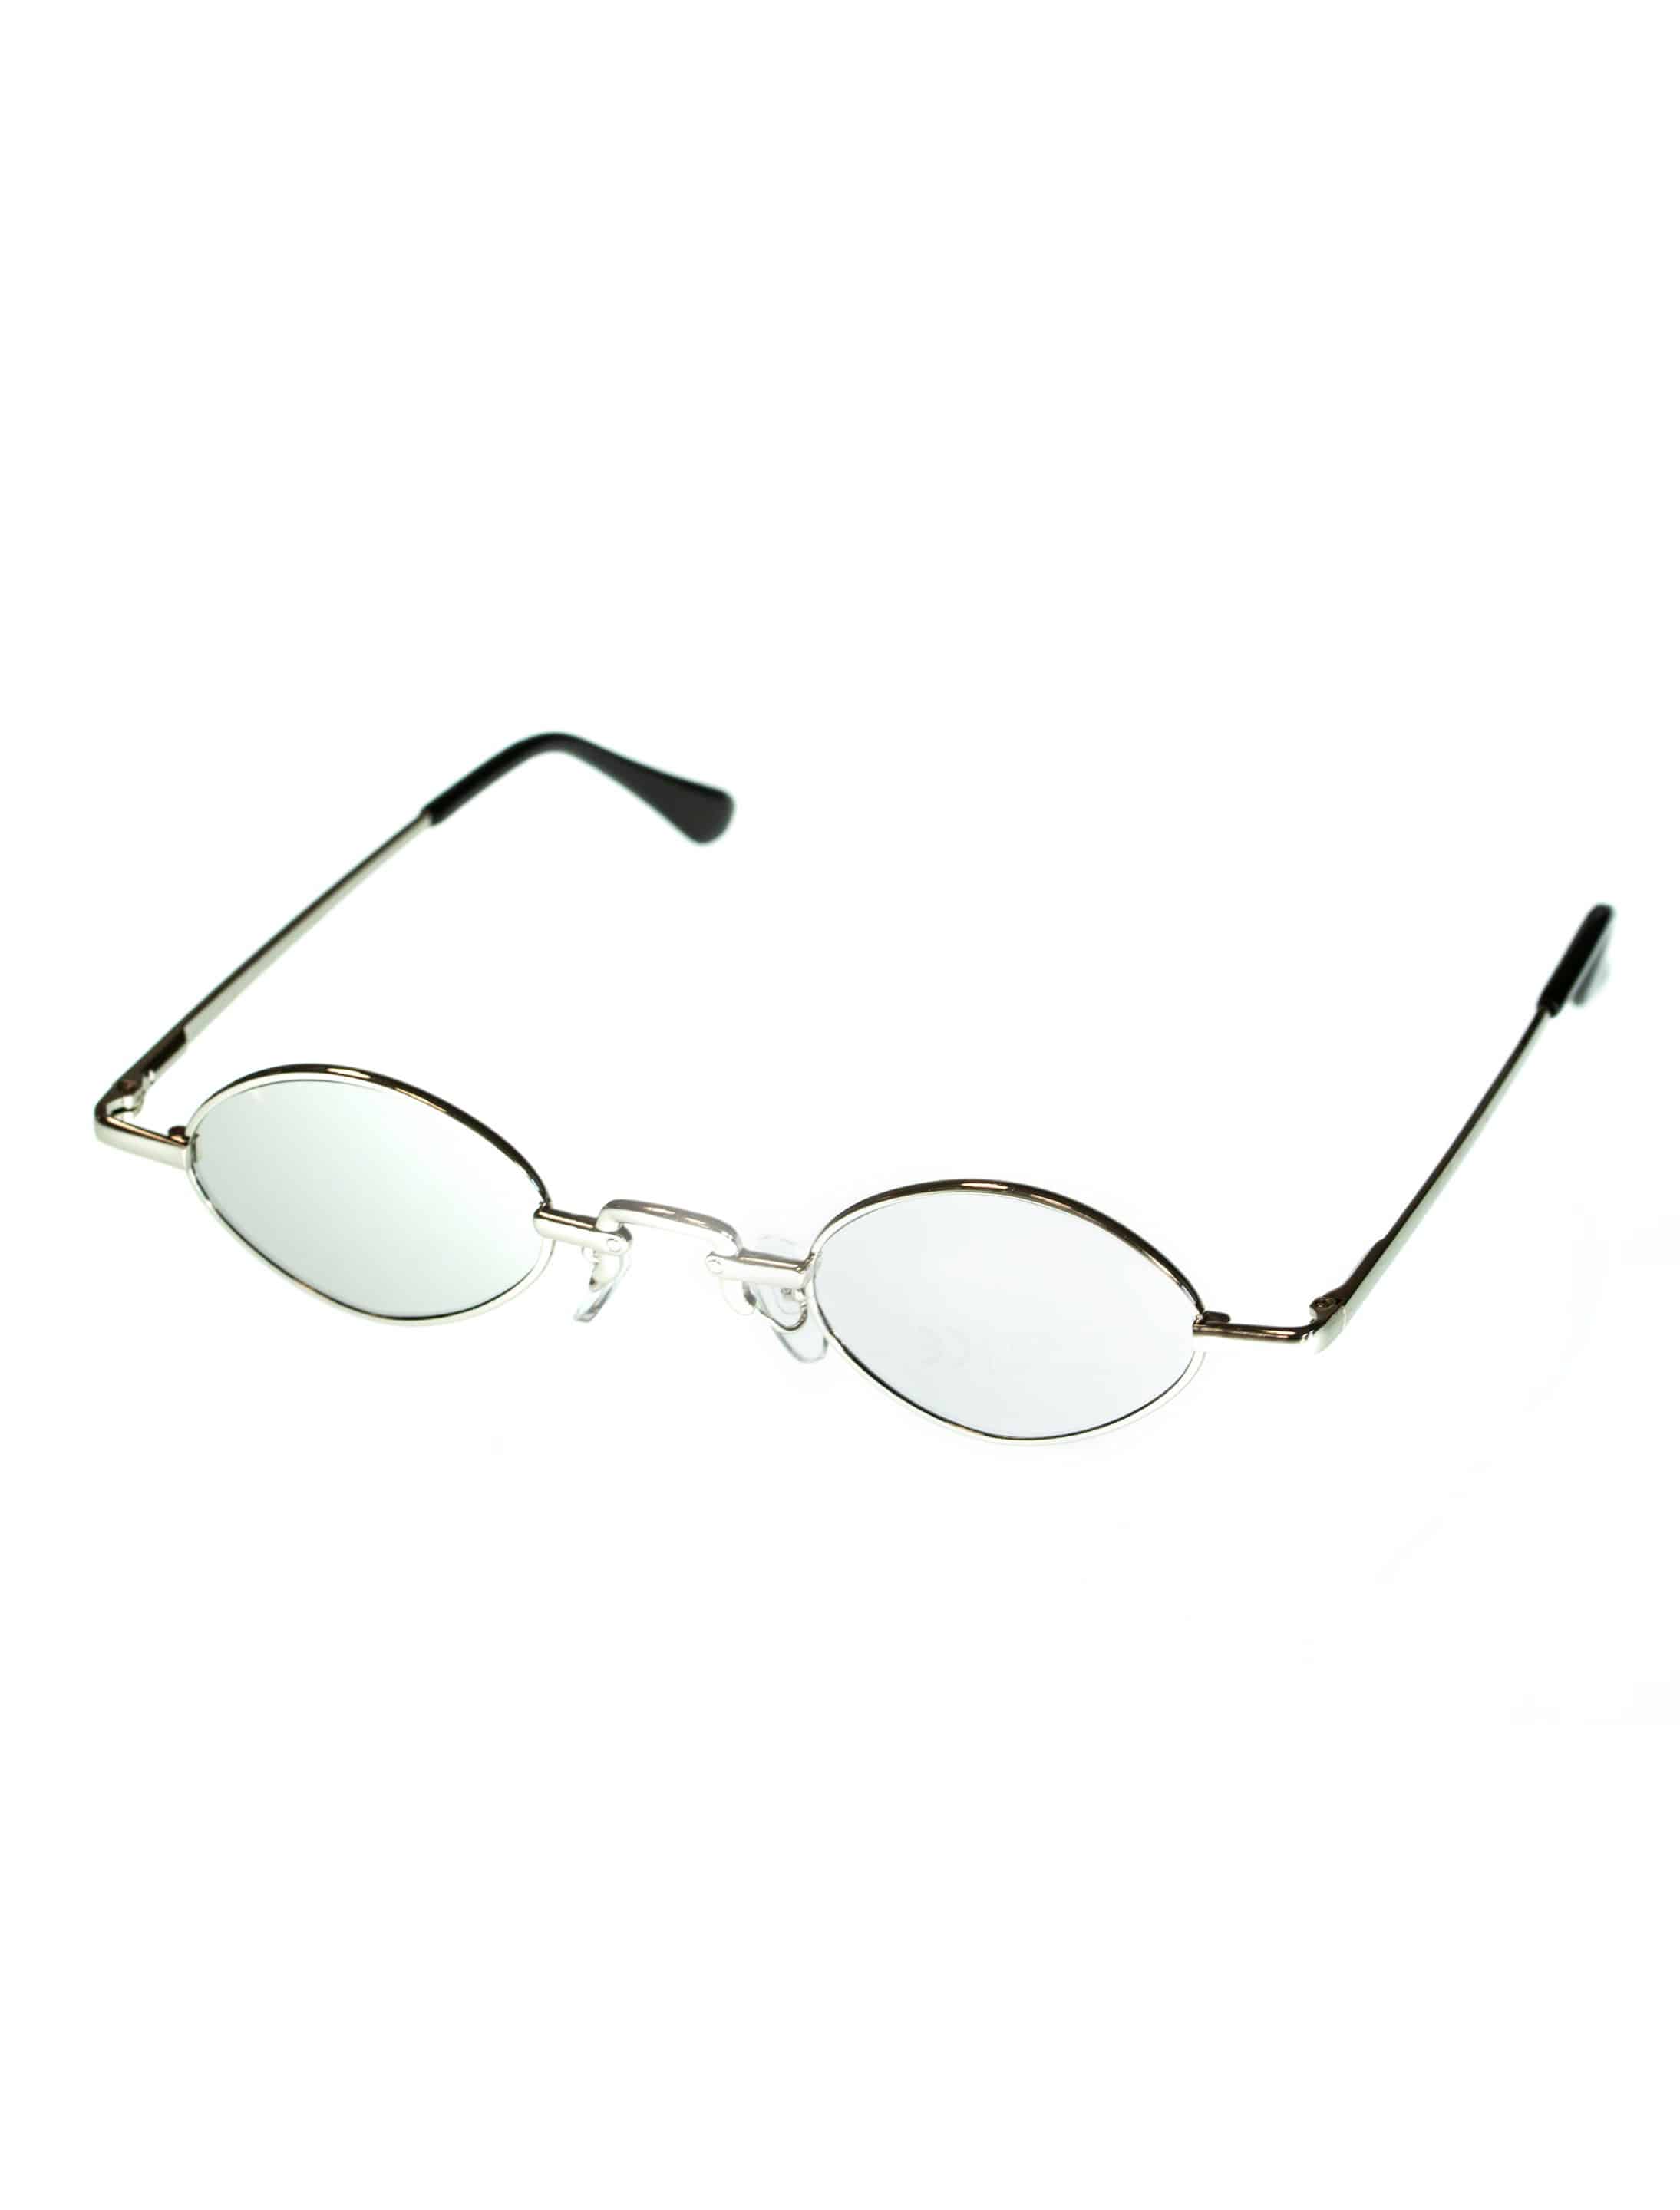 Brille silber mit Spiegelglas silber